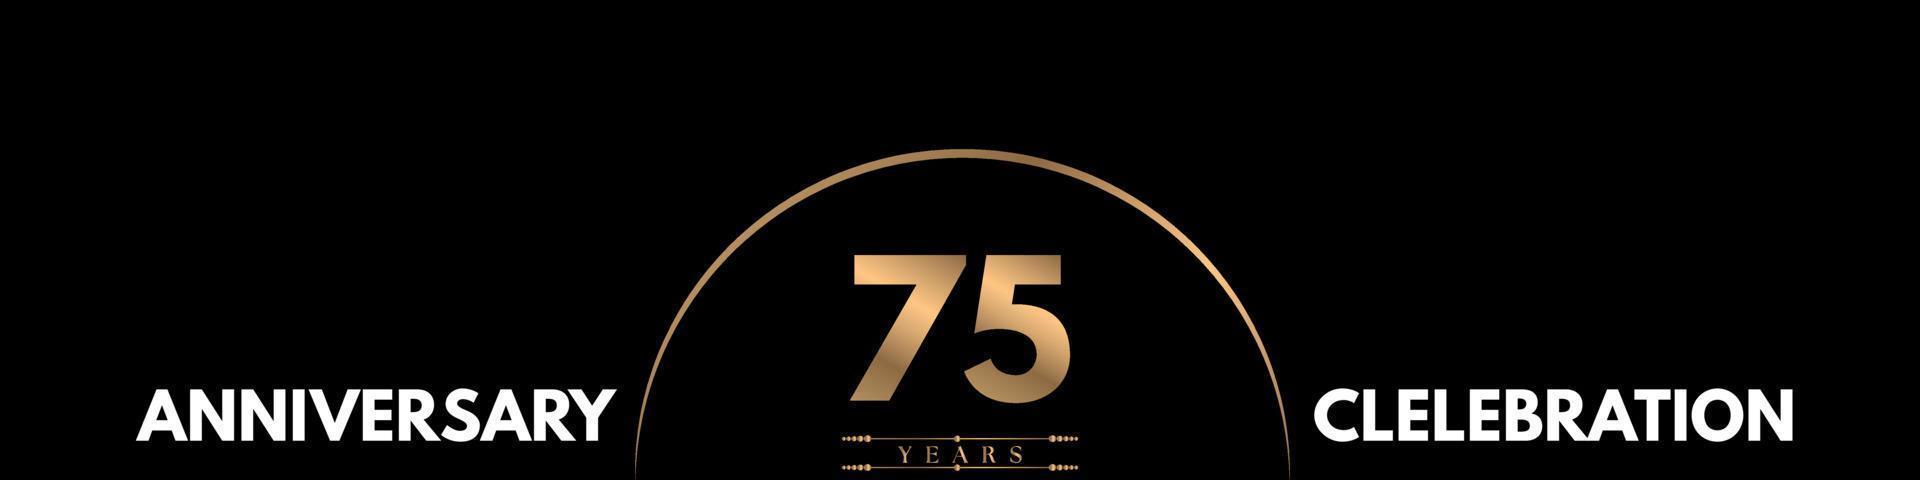 Celebrazione dell'anniversario di 75 anni con numero elegante isolato su sfondo nero. disegno vettoriale per biglietto di auguri, festa di compleanno, matrimonio, festa evento, cerimonia, biglietto d'invito.